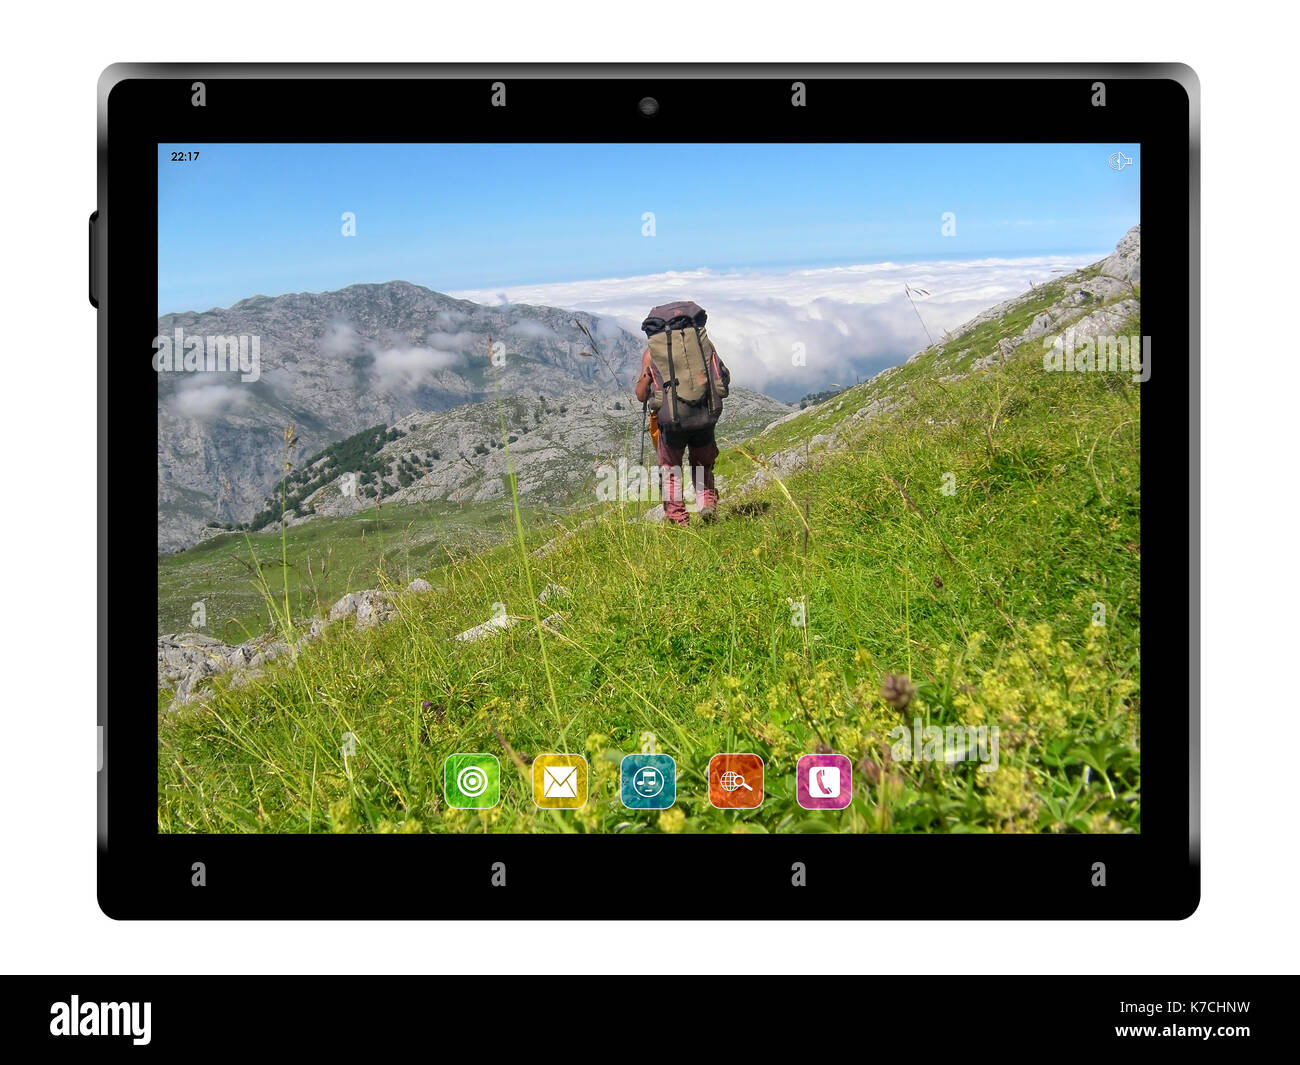 Tablette avec hotography de montagnes sur fond blanc. 3d illustration. Banque D'Images